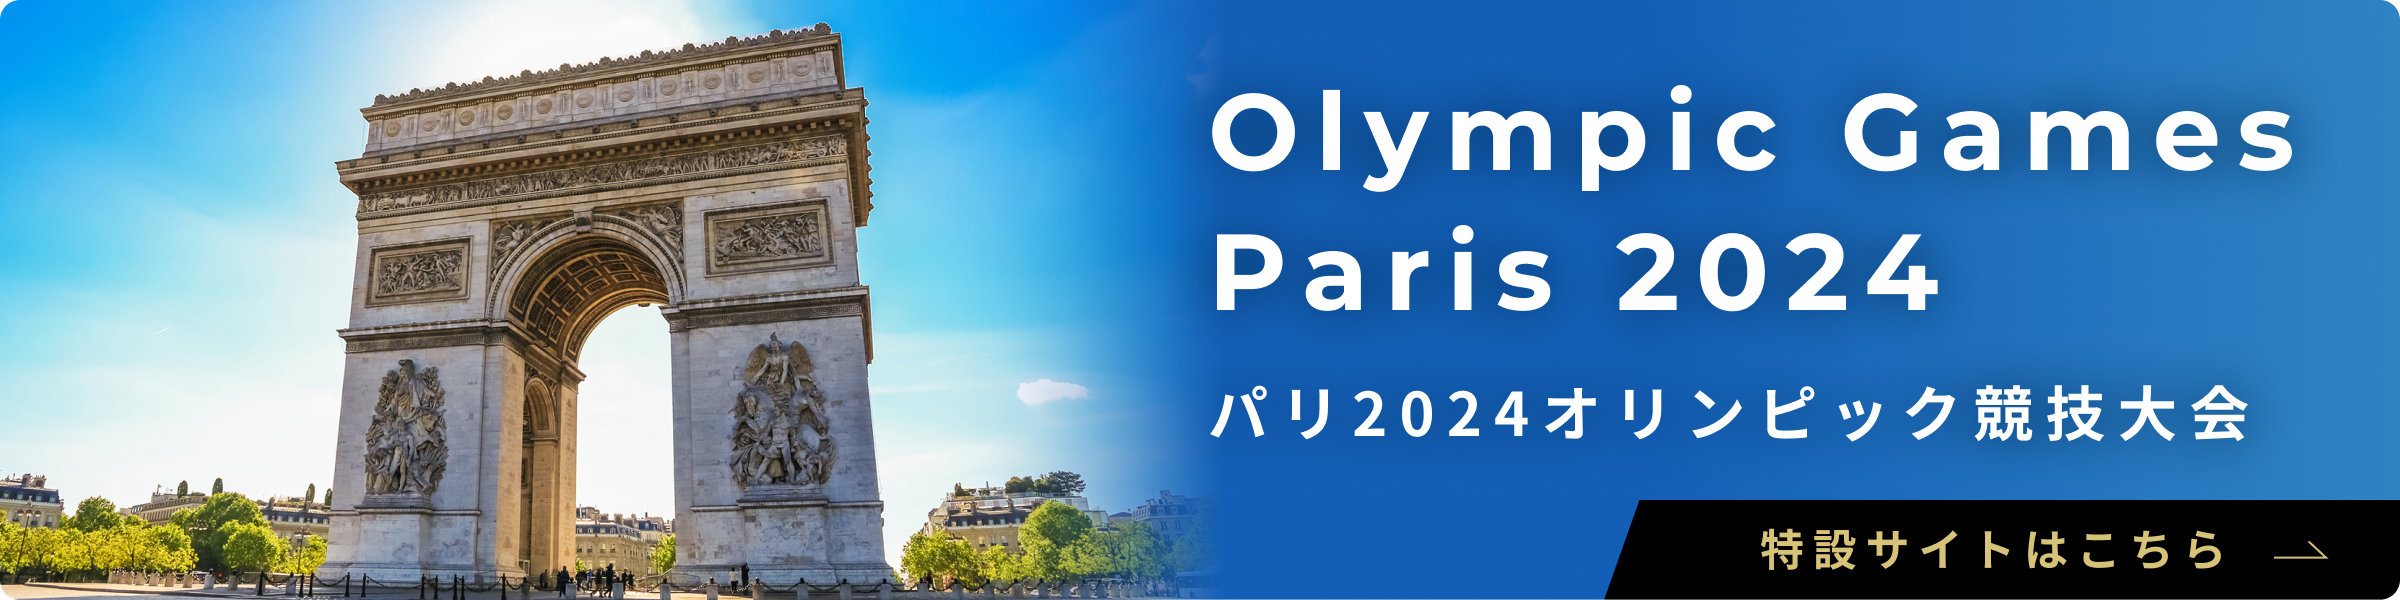 パリ2024オリンピック競技大会特設サイトはこちら